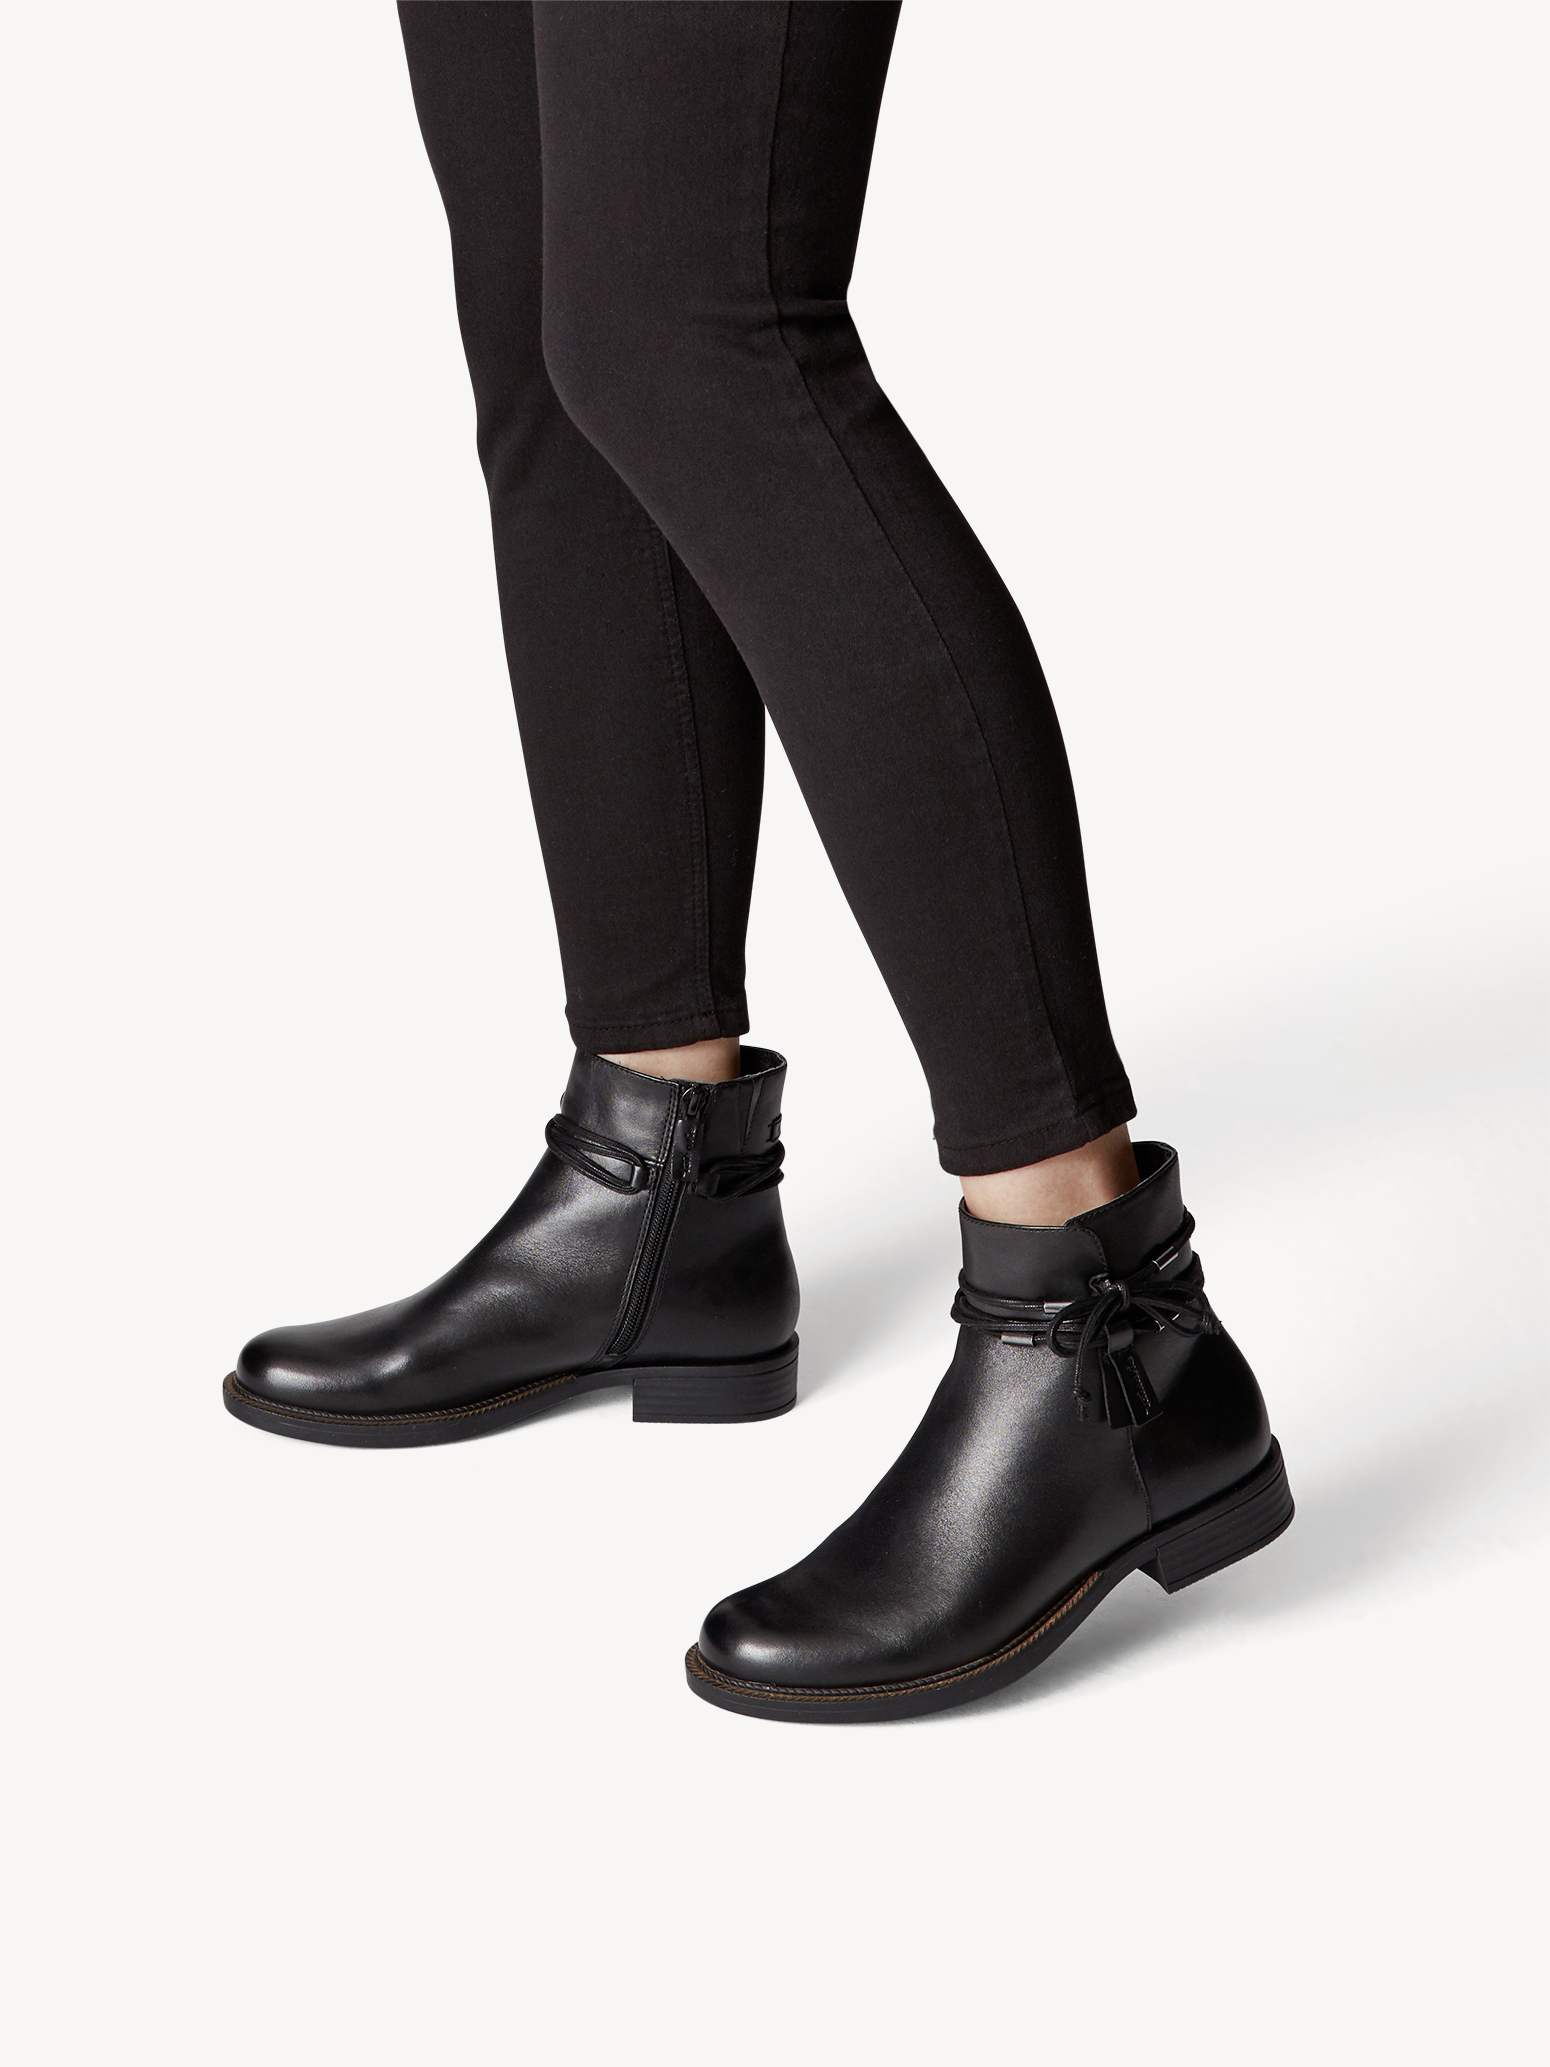 Ботинки женские (черный) - изображение №1